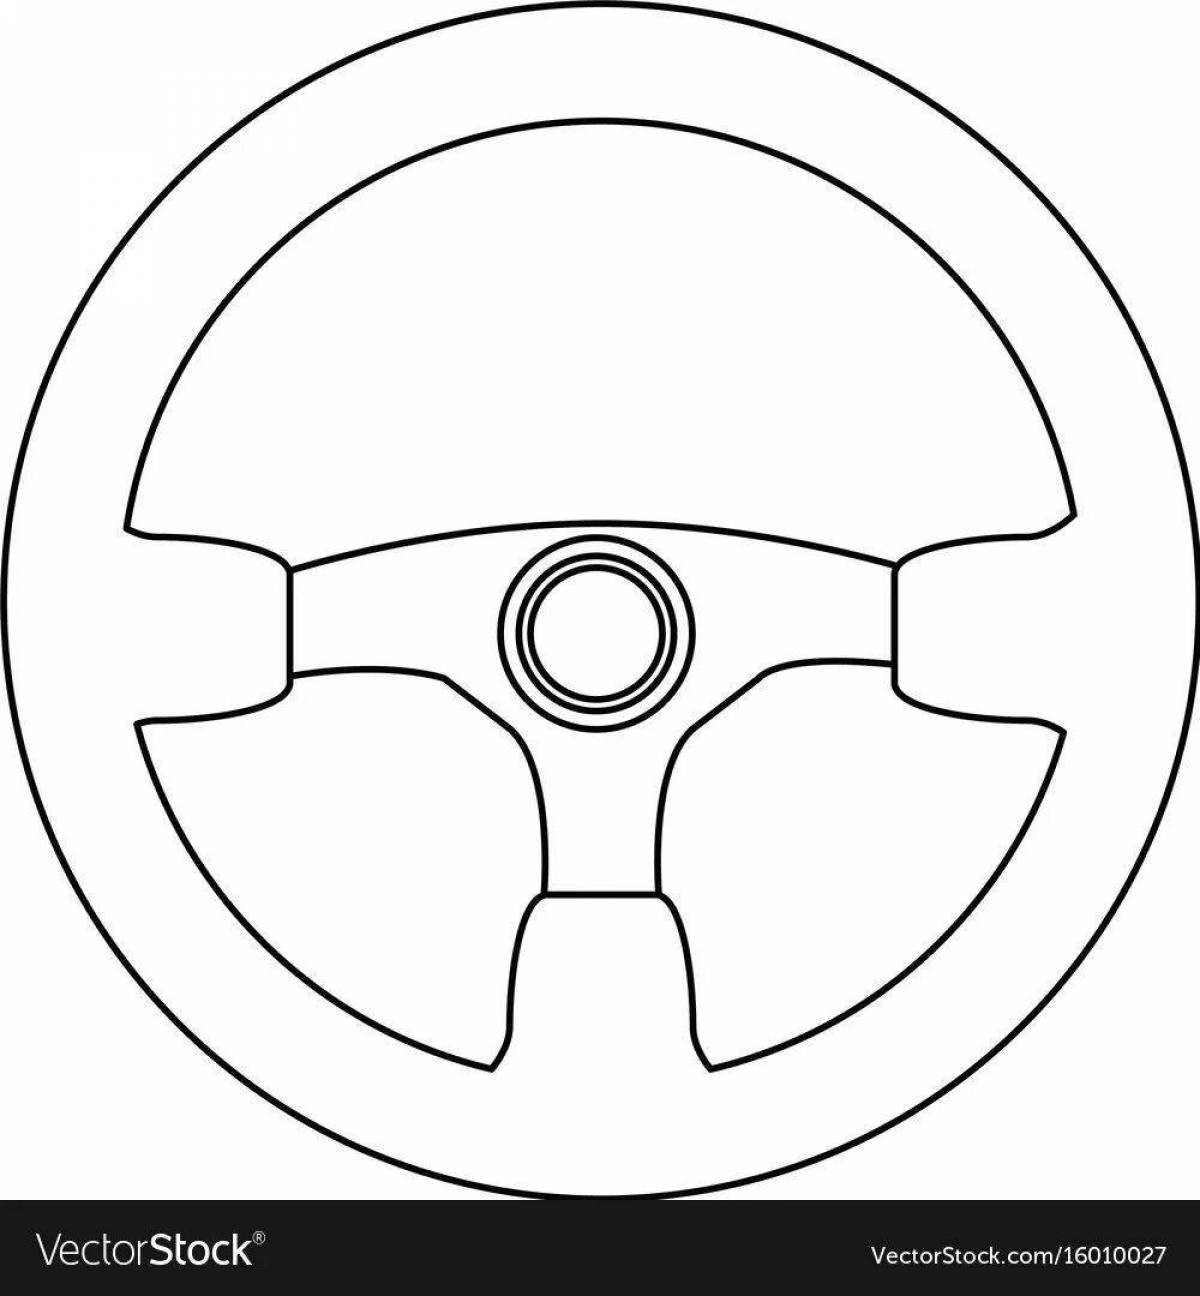 Coloured steering wheel for children's car